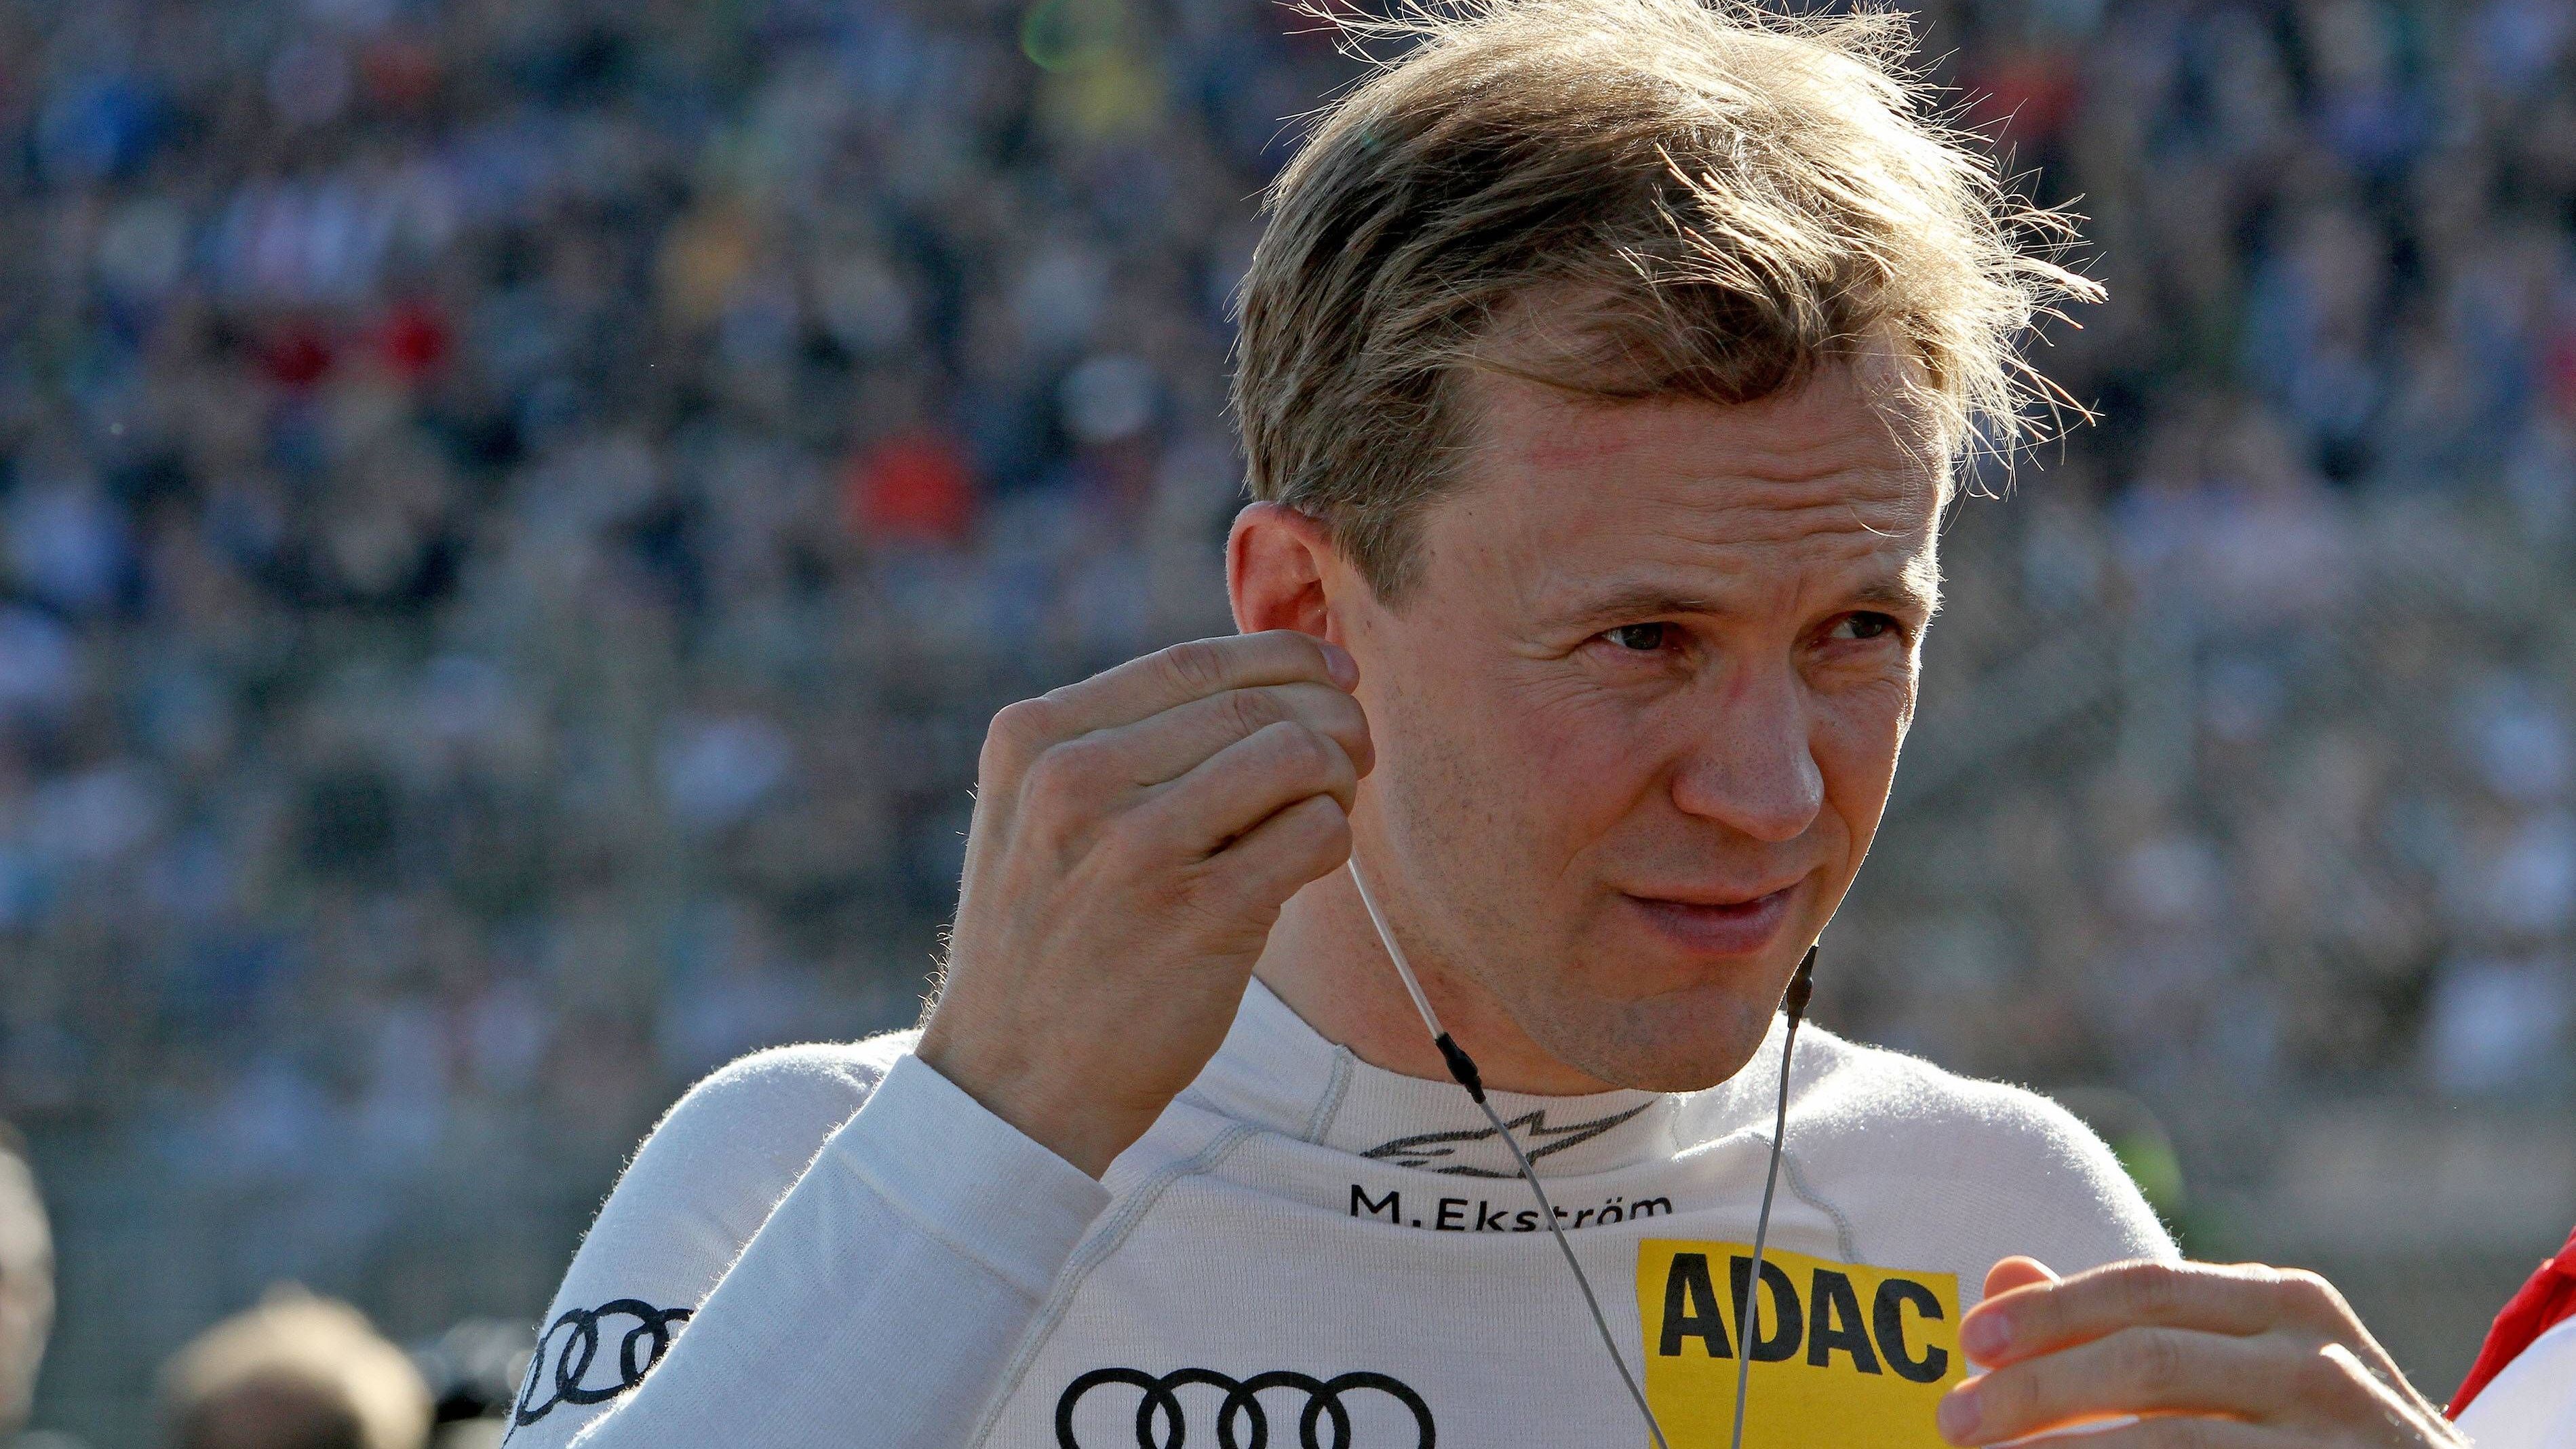 <strong>Mattias Ekström</strong><br>Zeit in der DTM: 2001 - 2018<br>Teams: Audi, Audi Sport Team Abt Sportsline, Abt, Audi Sport Team Rosberg<br>Anzahl der Rennen: 170<br>Größte Erfolge: Zwei Meisterschaften, 76 Podiumsplätze, davon 23 Siege